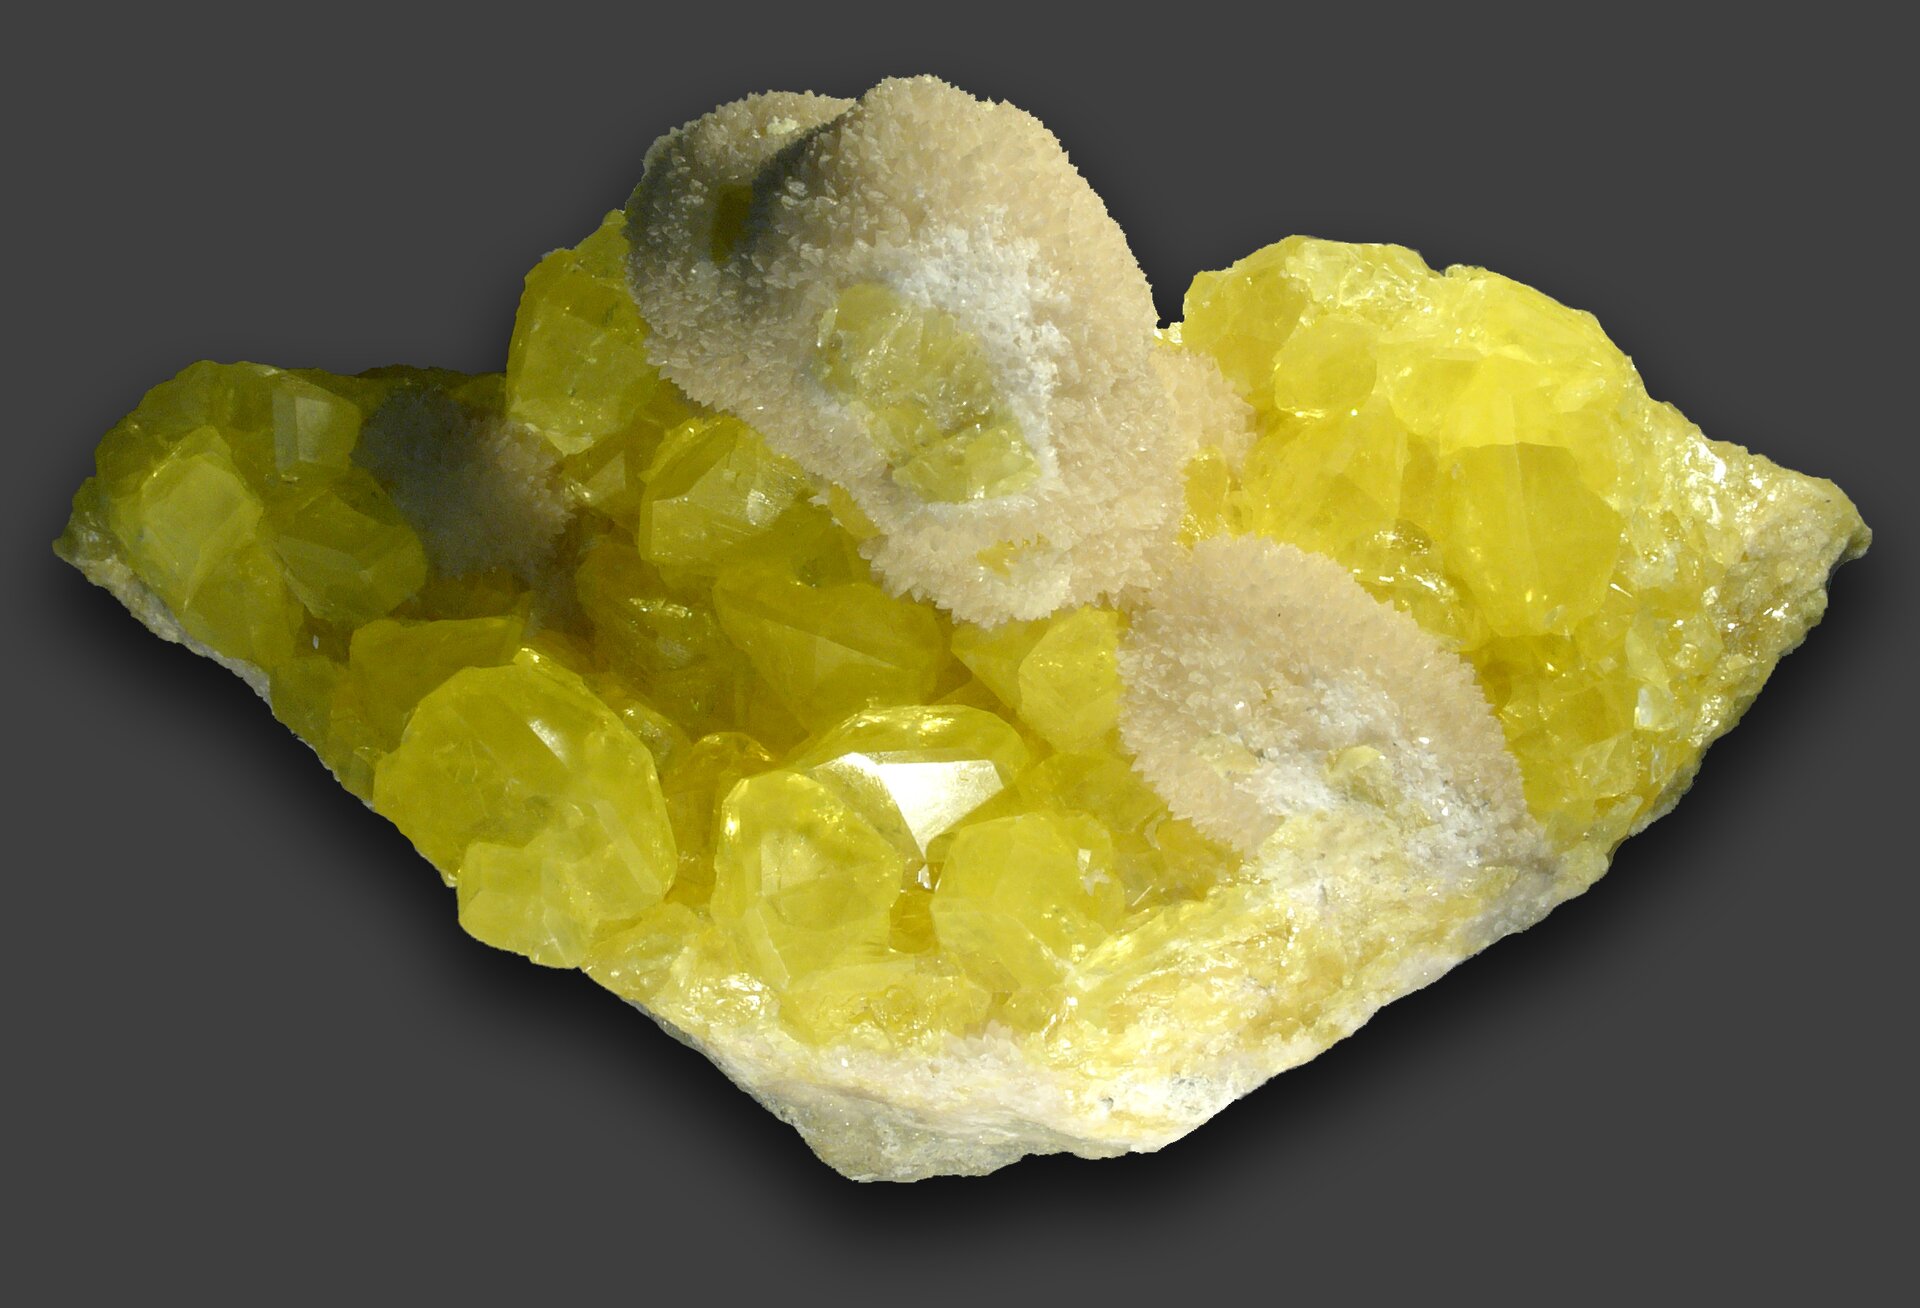 Zdjęcie przedstawia odłamek żółtej siarki składający się z większych i mniejszych kryształów.